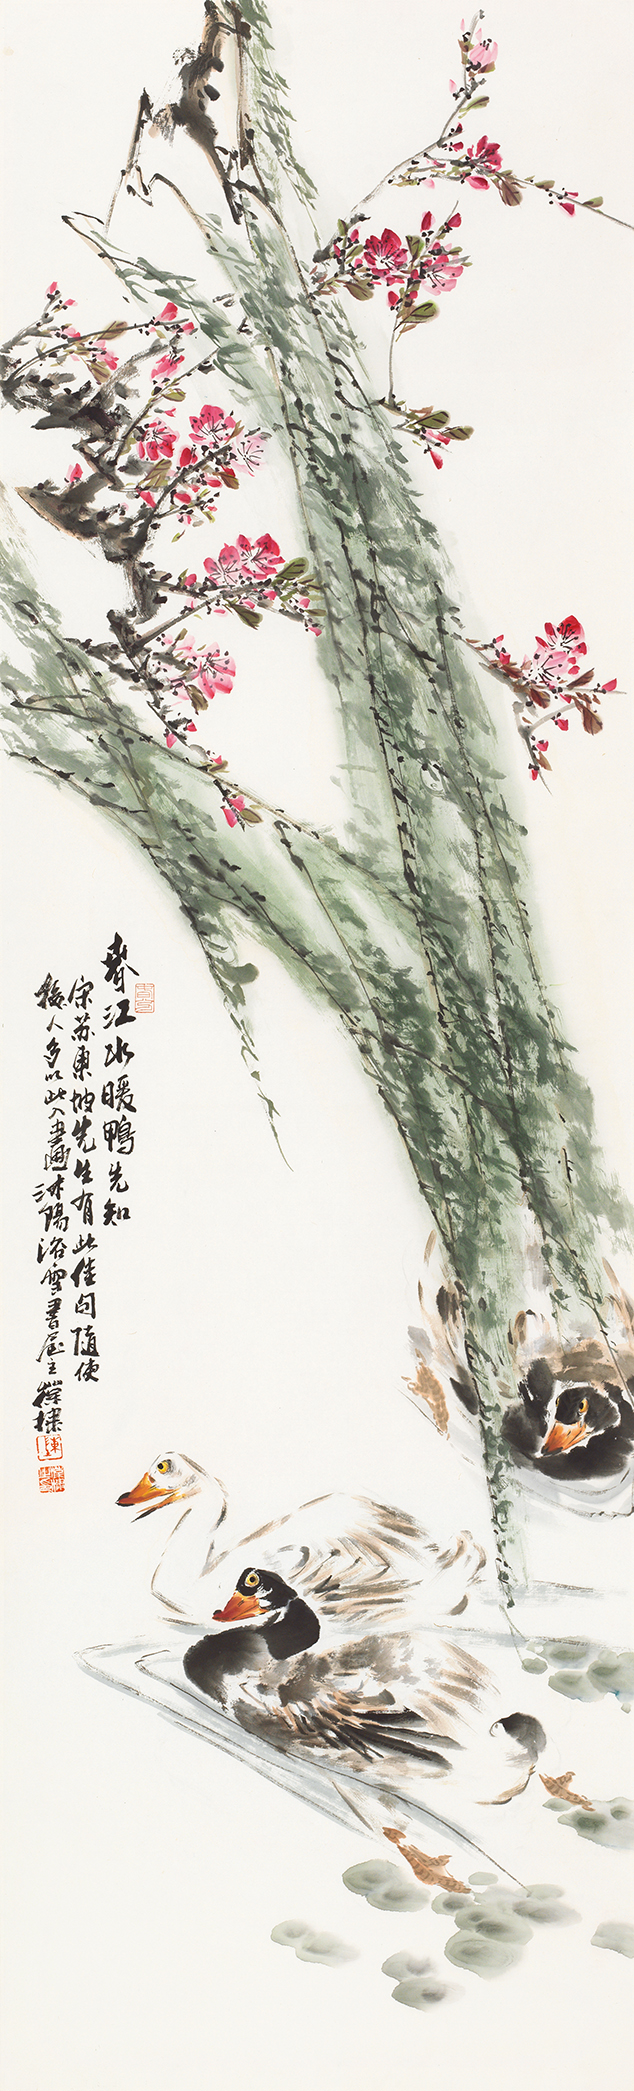 二十四节气花鸟画—4《春分》